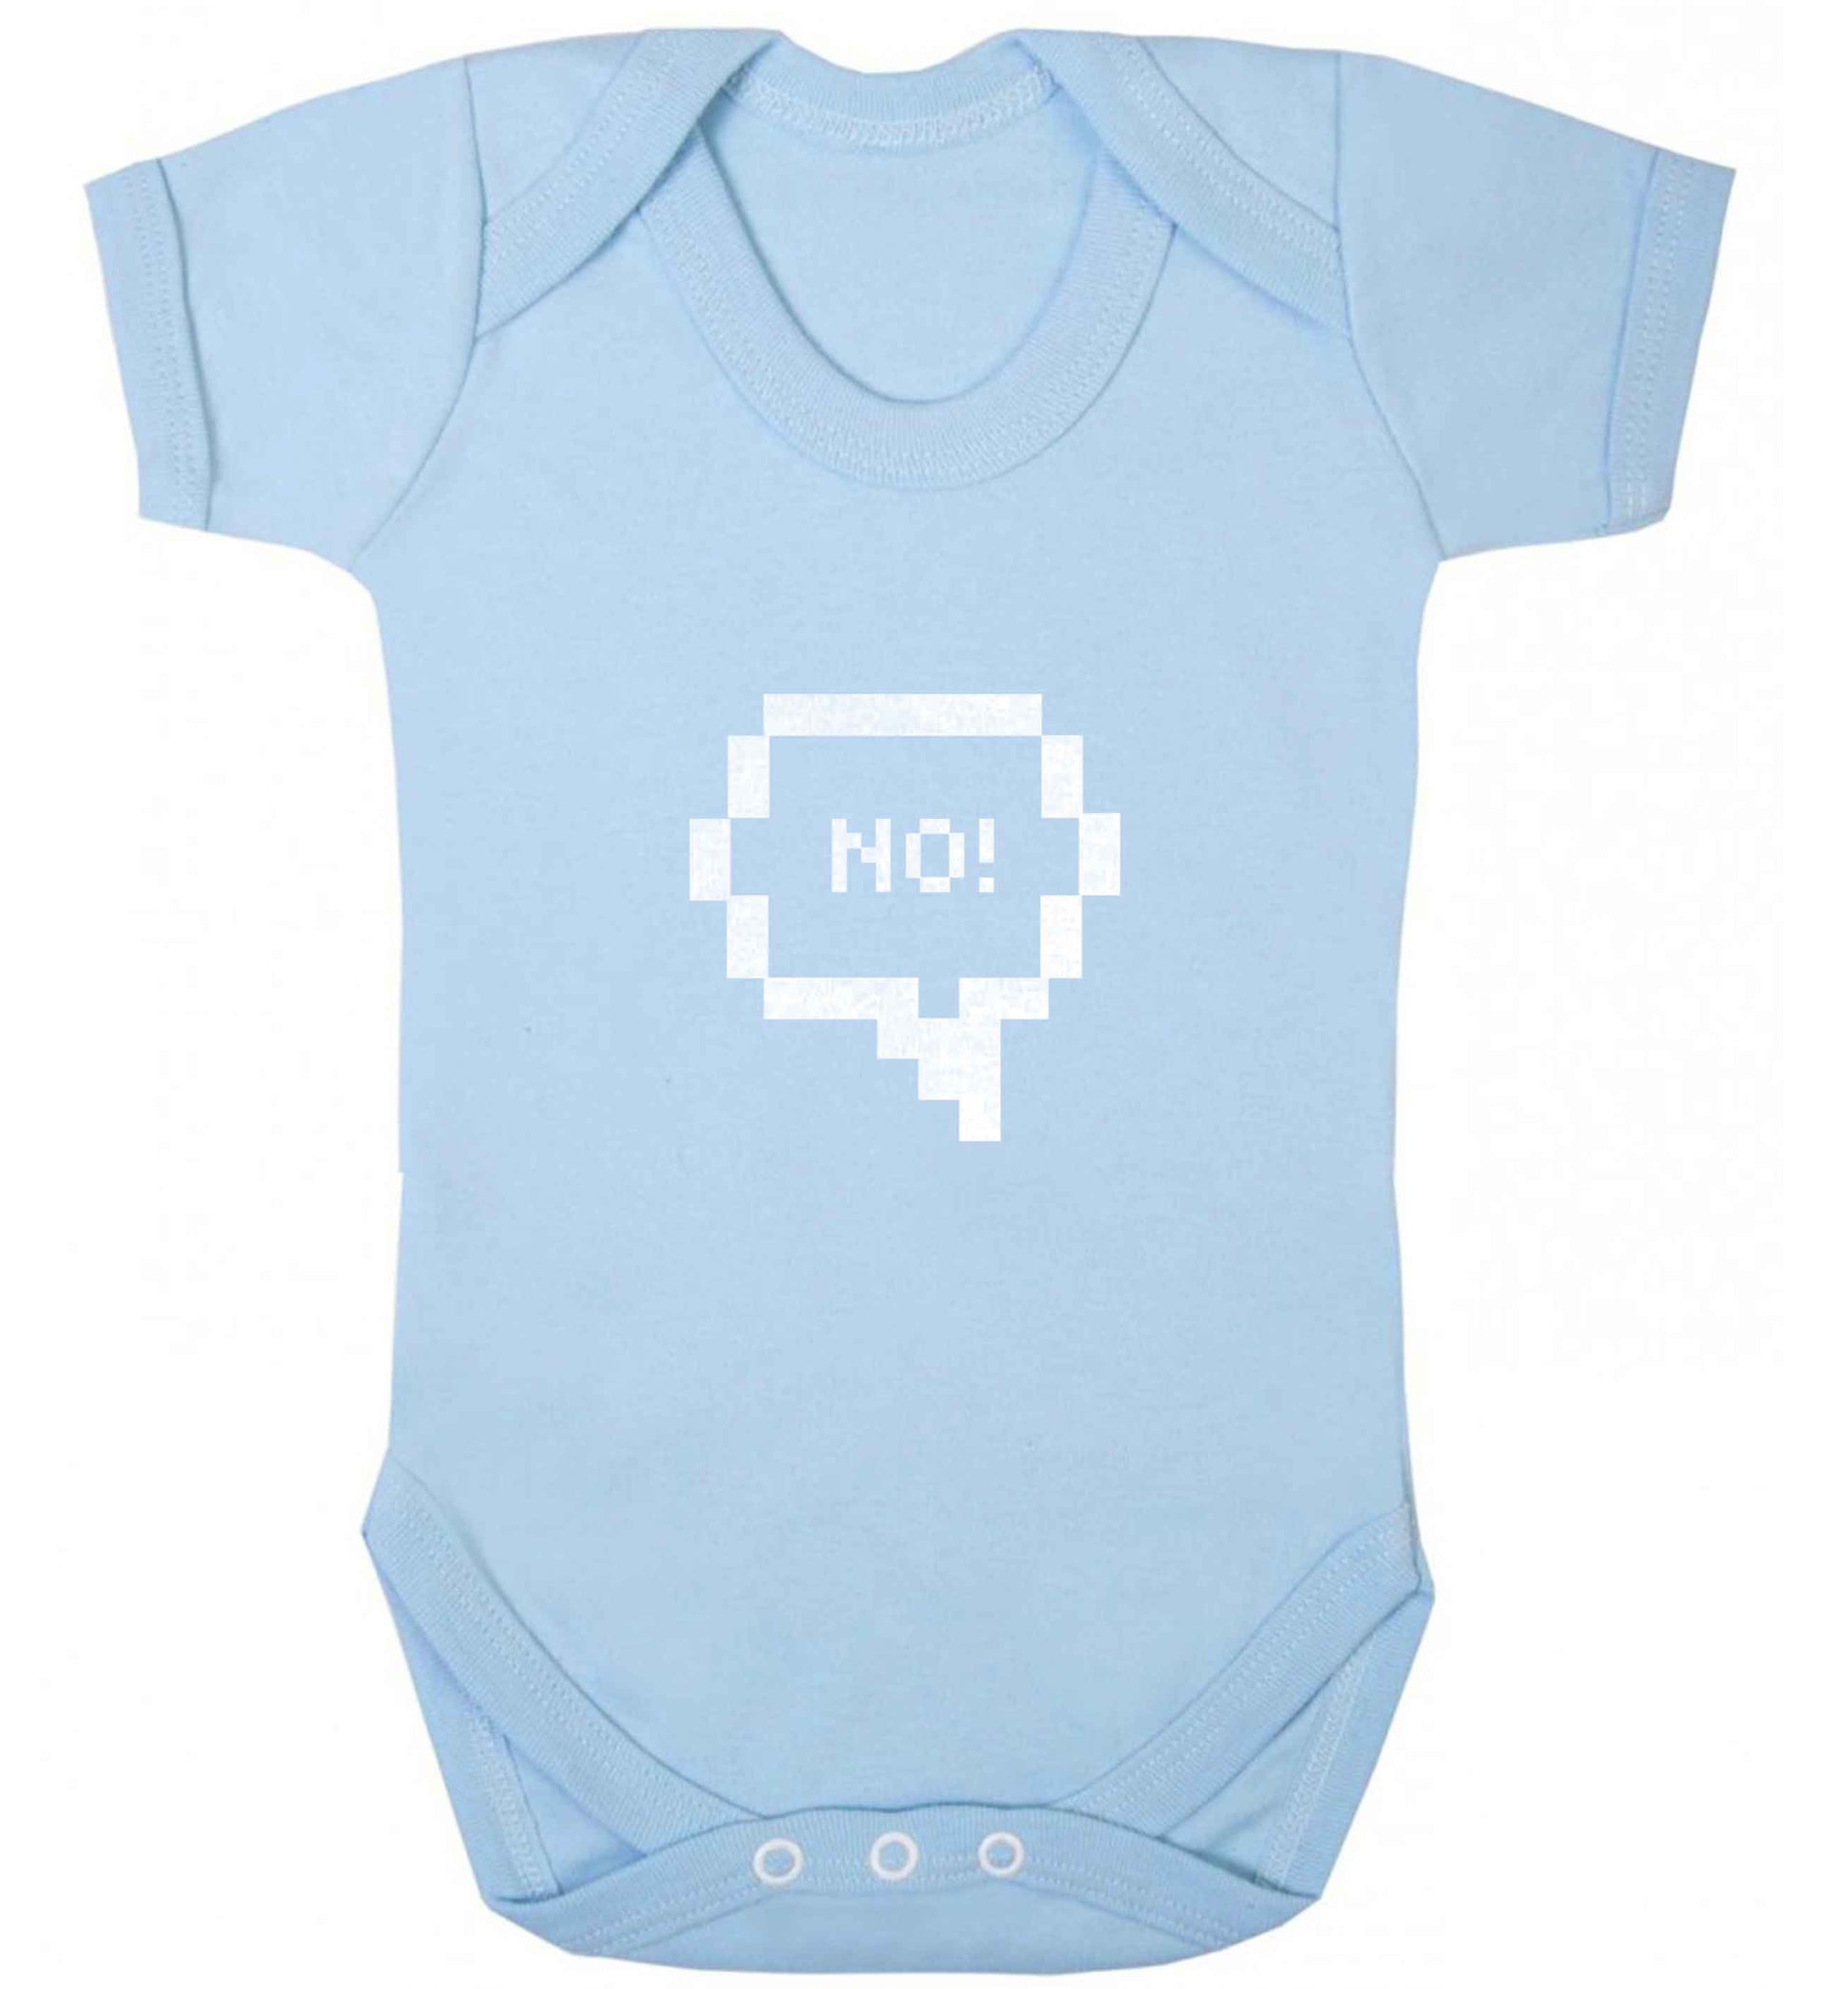 No baby vest pale blue 18-24 months